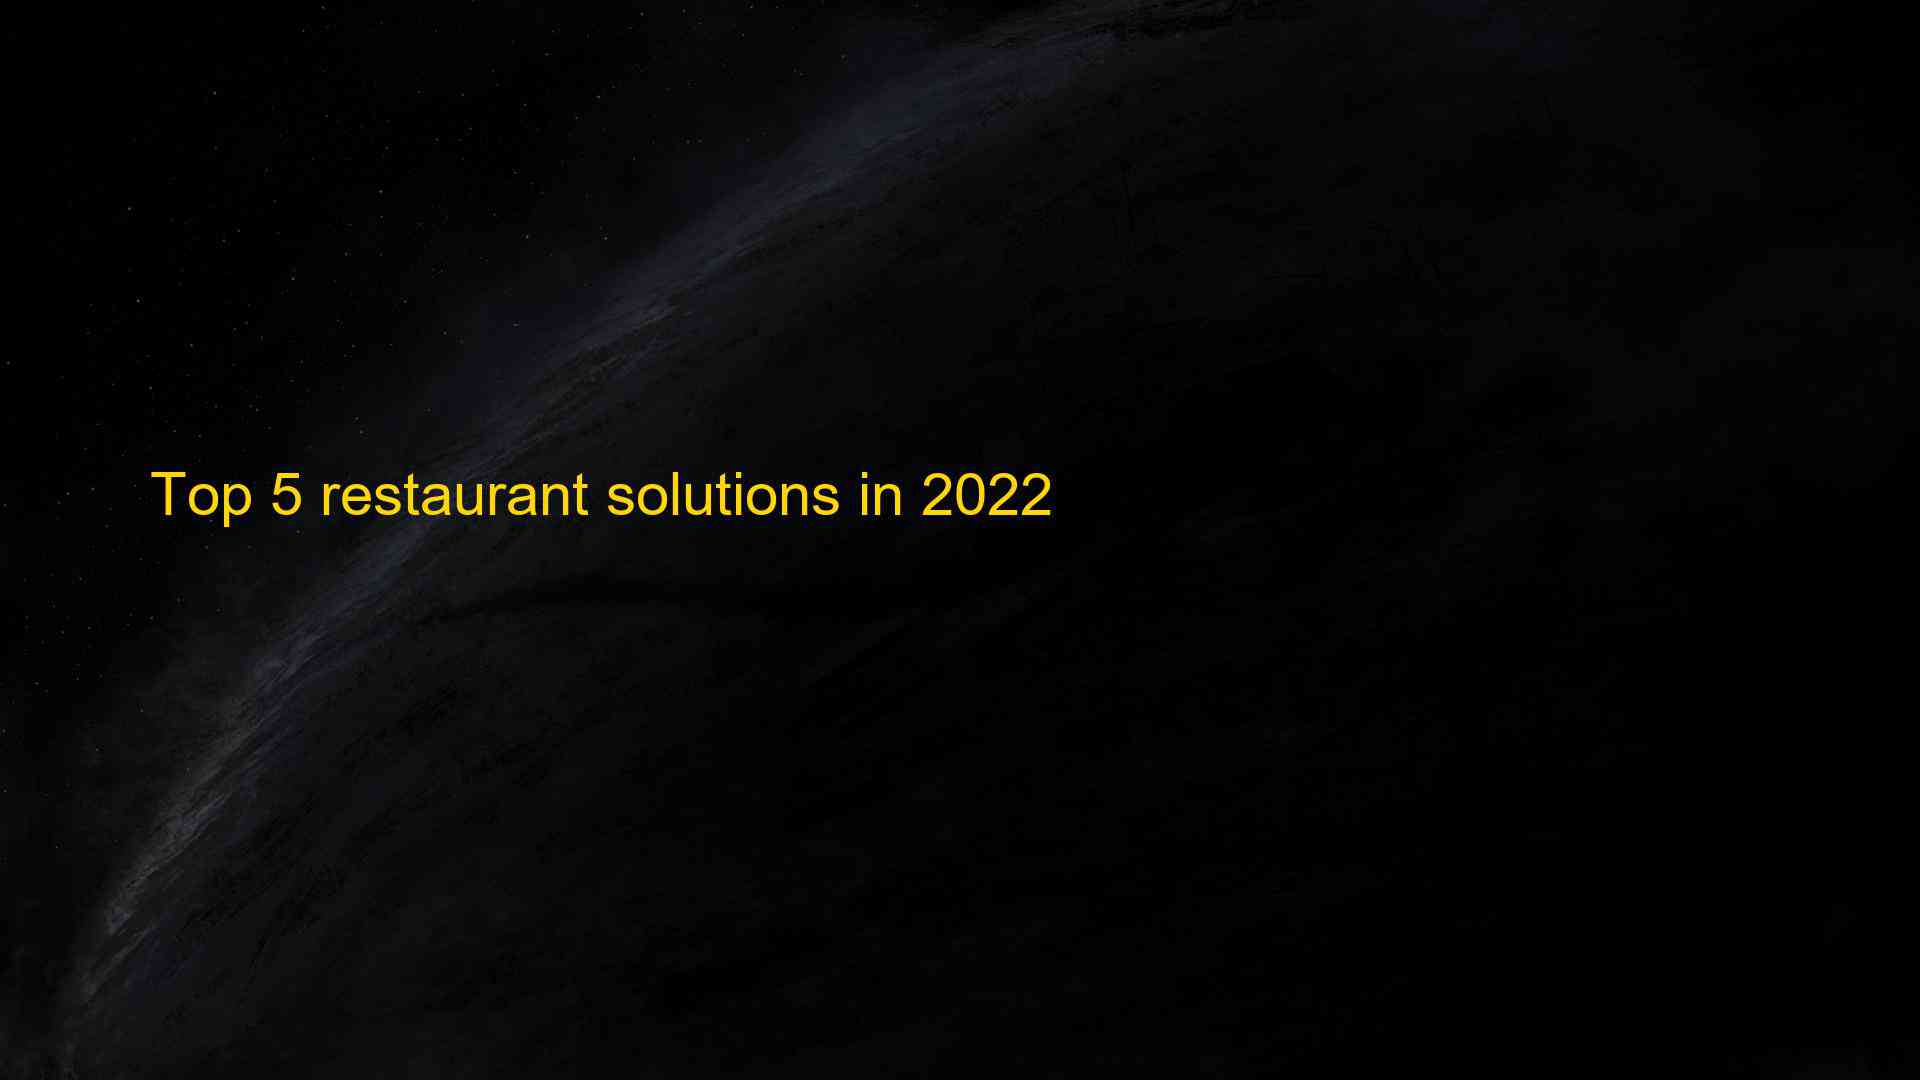 Top 5 restaurant solutions in 2022 1663386159